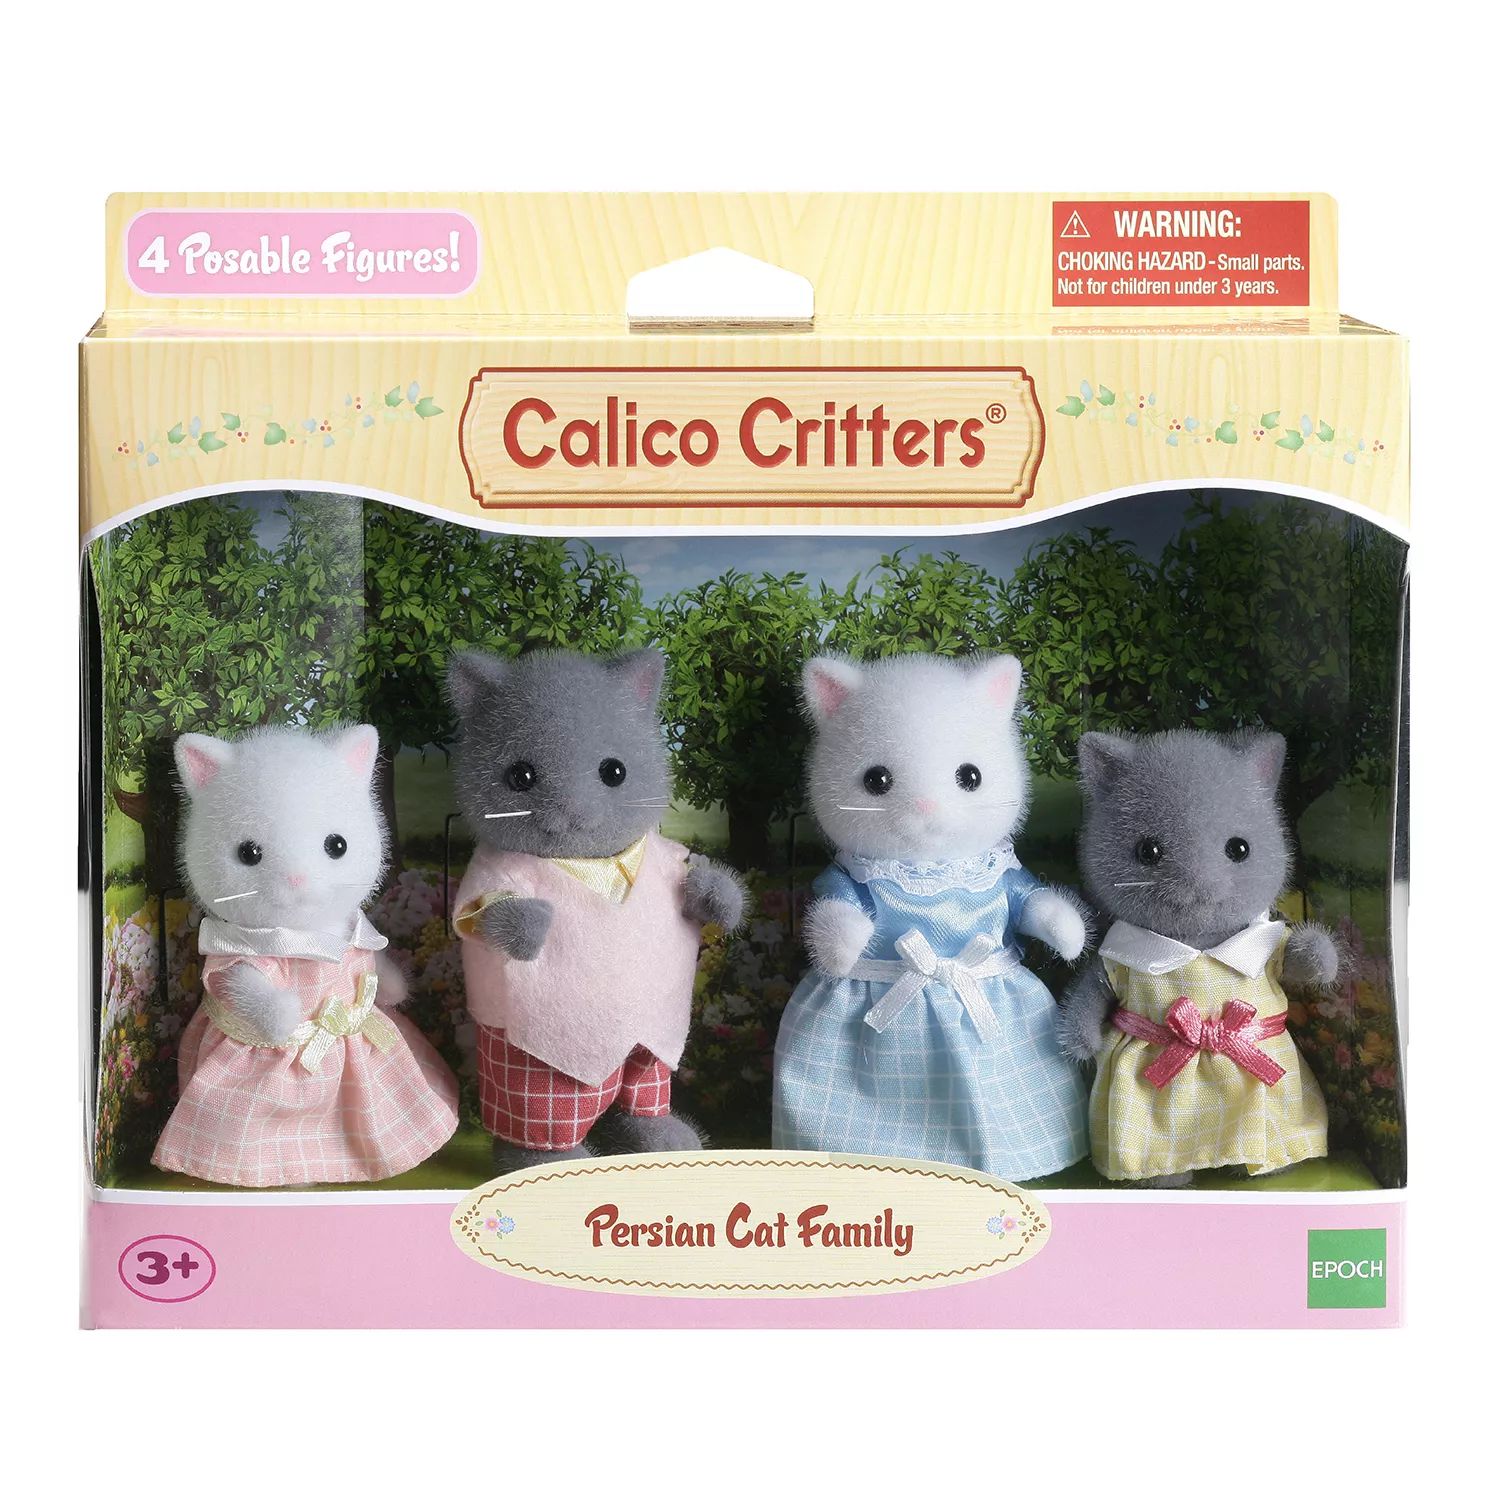 Семейный набор персидских кошек Calico Critters, состоящий из 4 коллекционных фигурок кукол Calico Critters